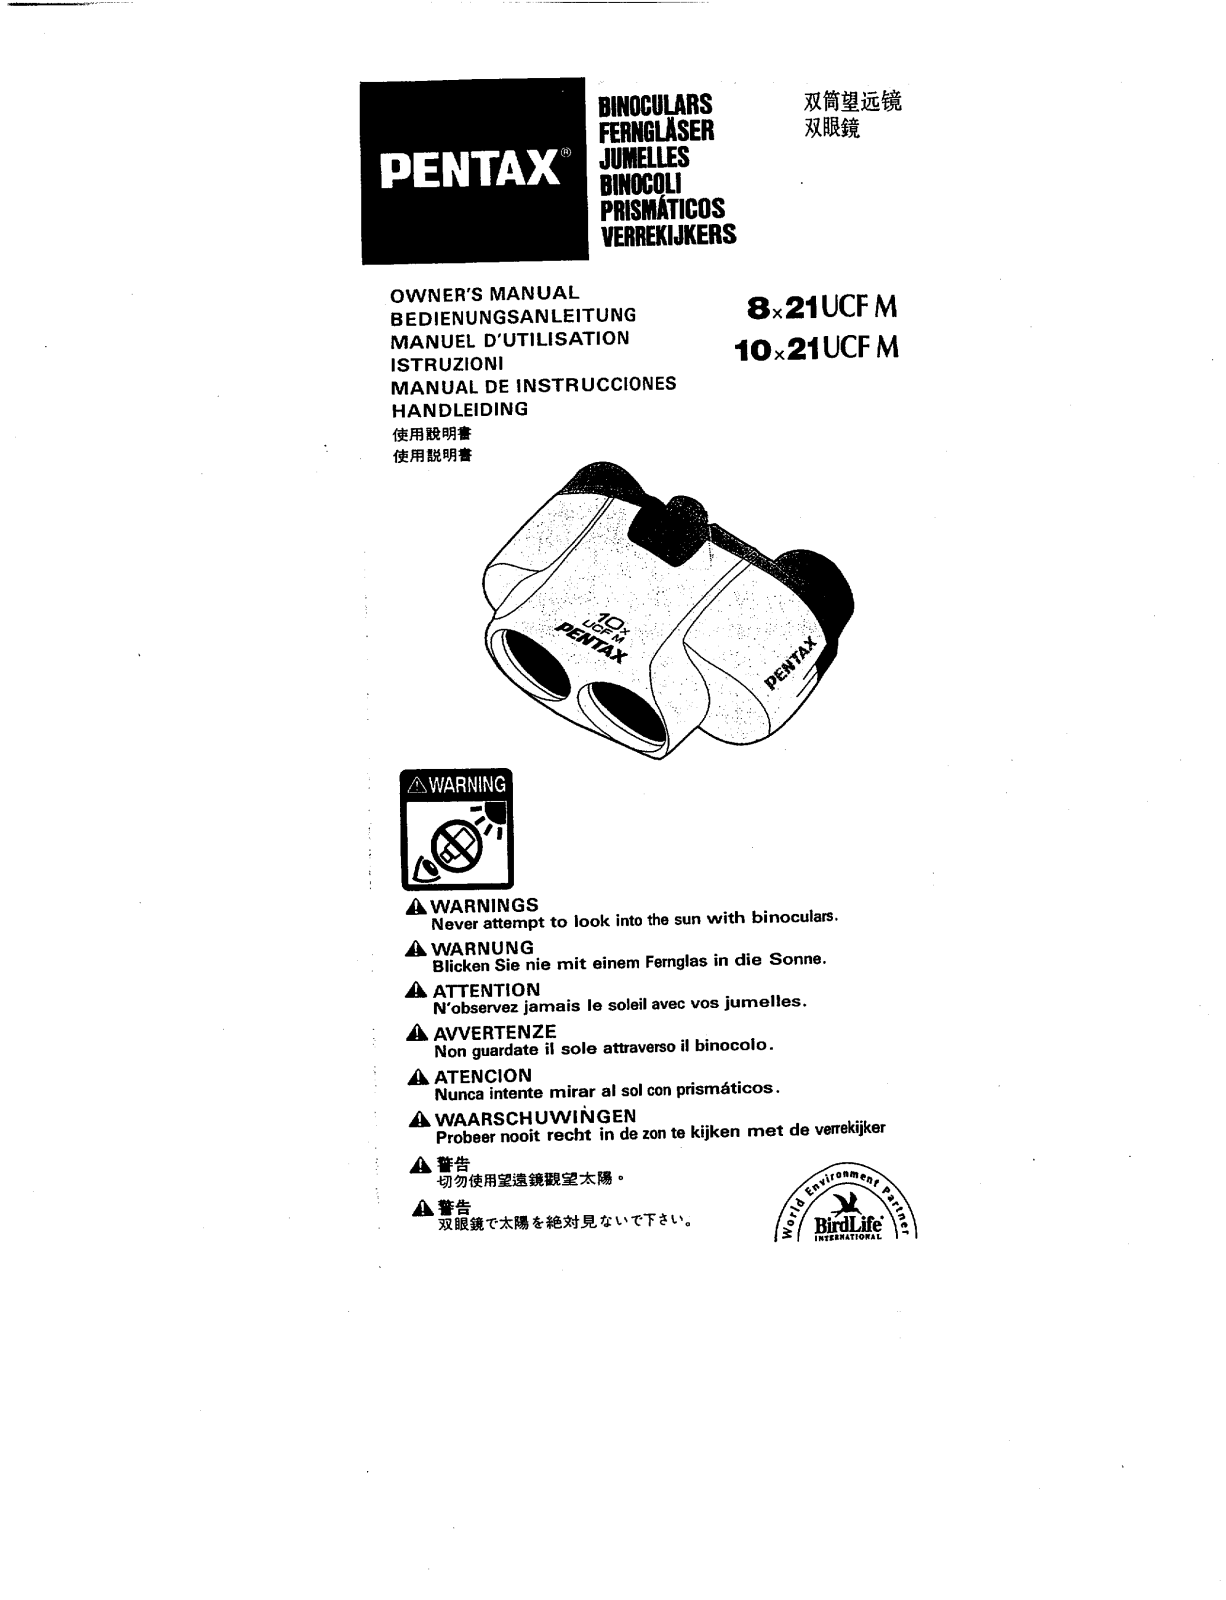 Pentax UCF M 10X21, UCF M 8X21 User Manual